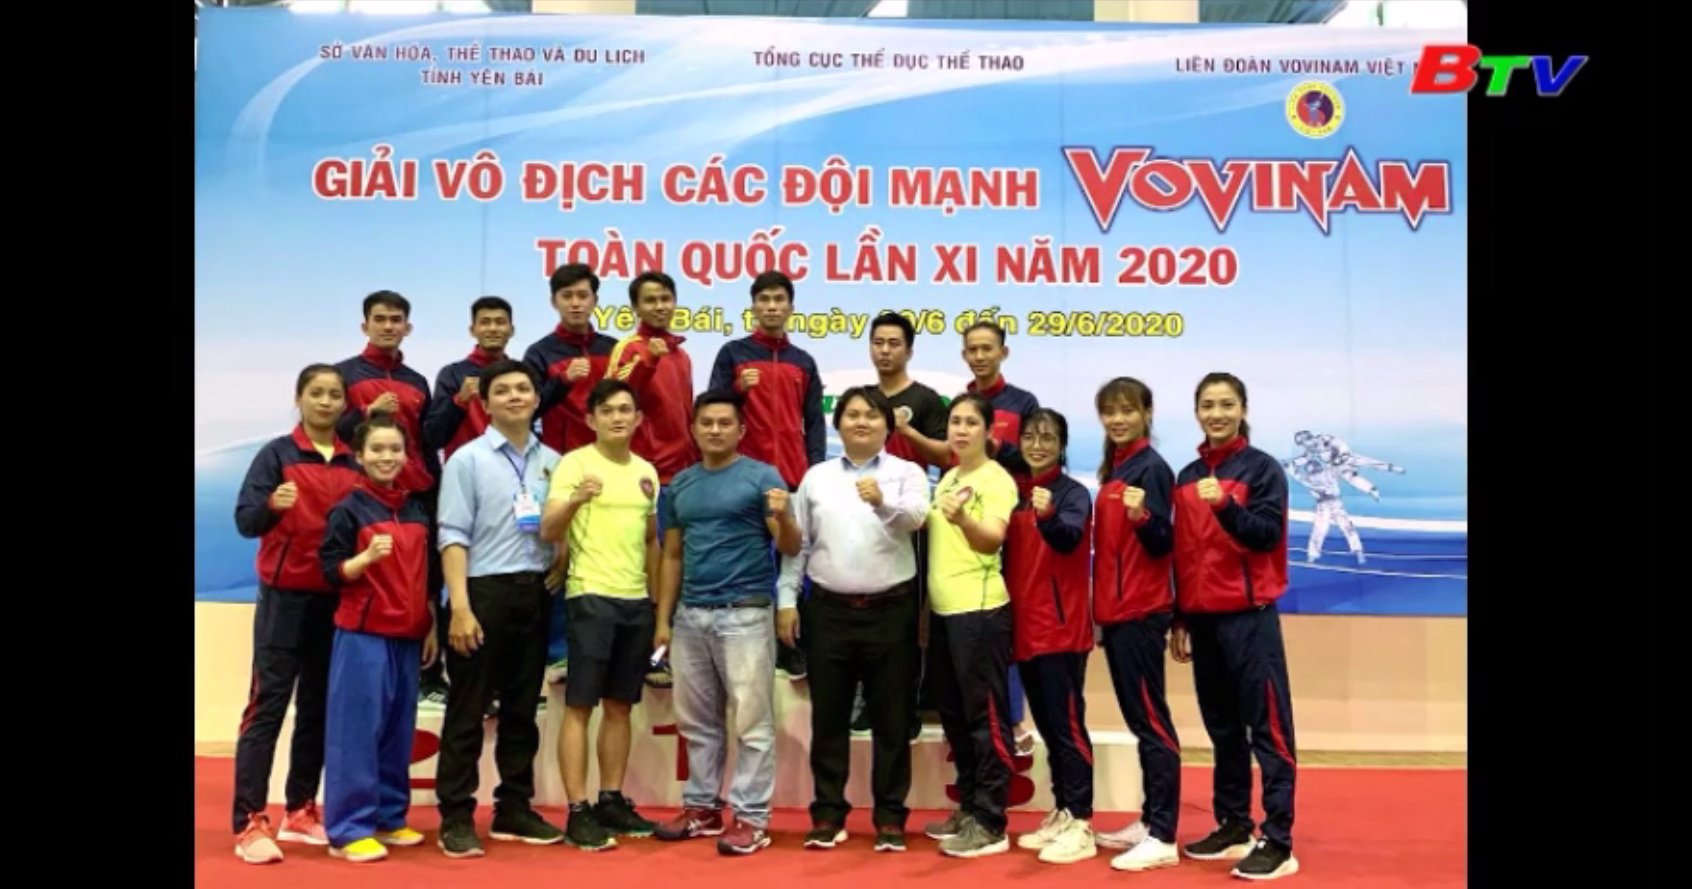 Giải vô địch các đội mạnh Vovinam toàn quốc lần XI – Bình Dương đạt 3 HCV